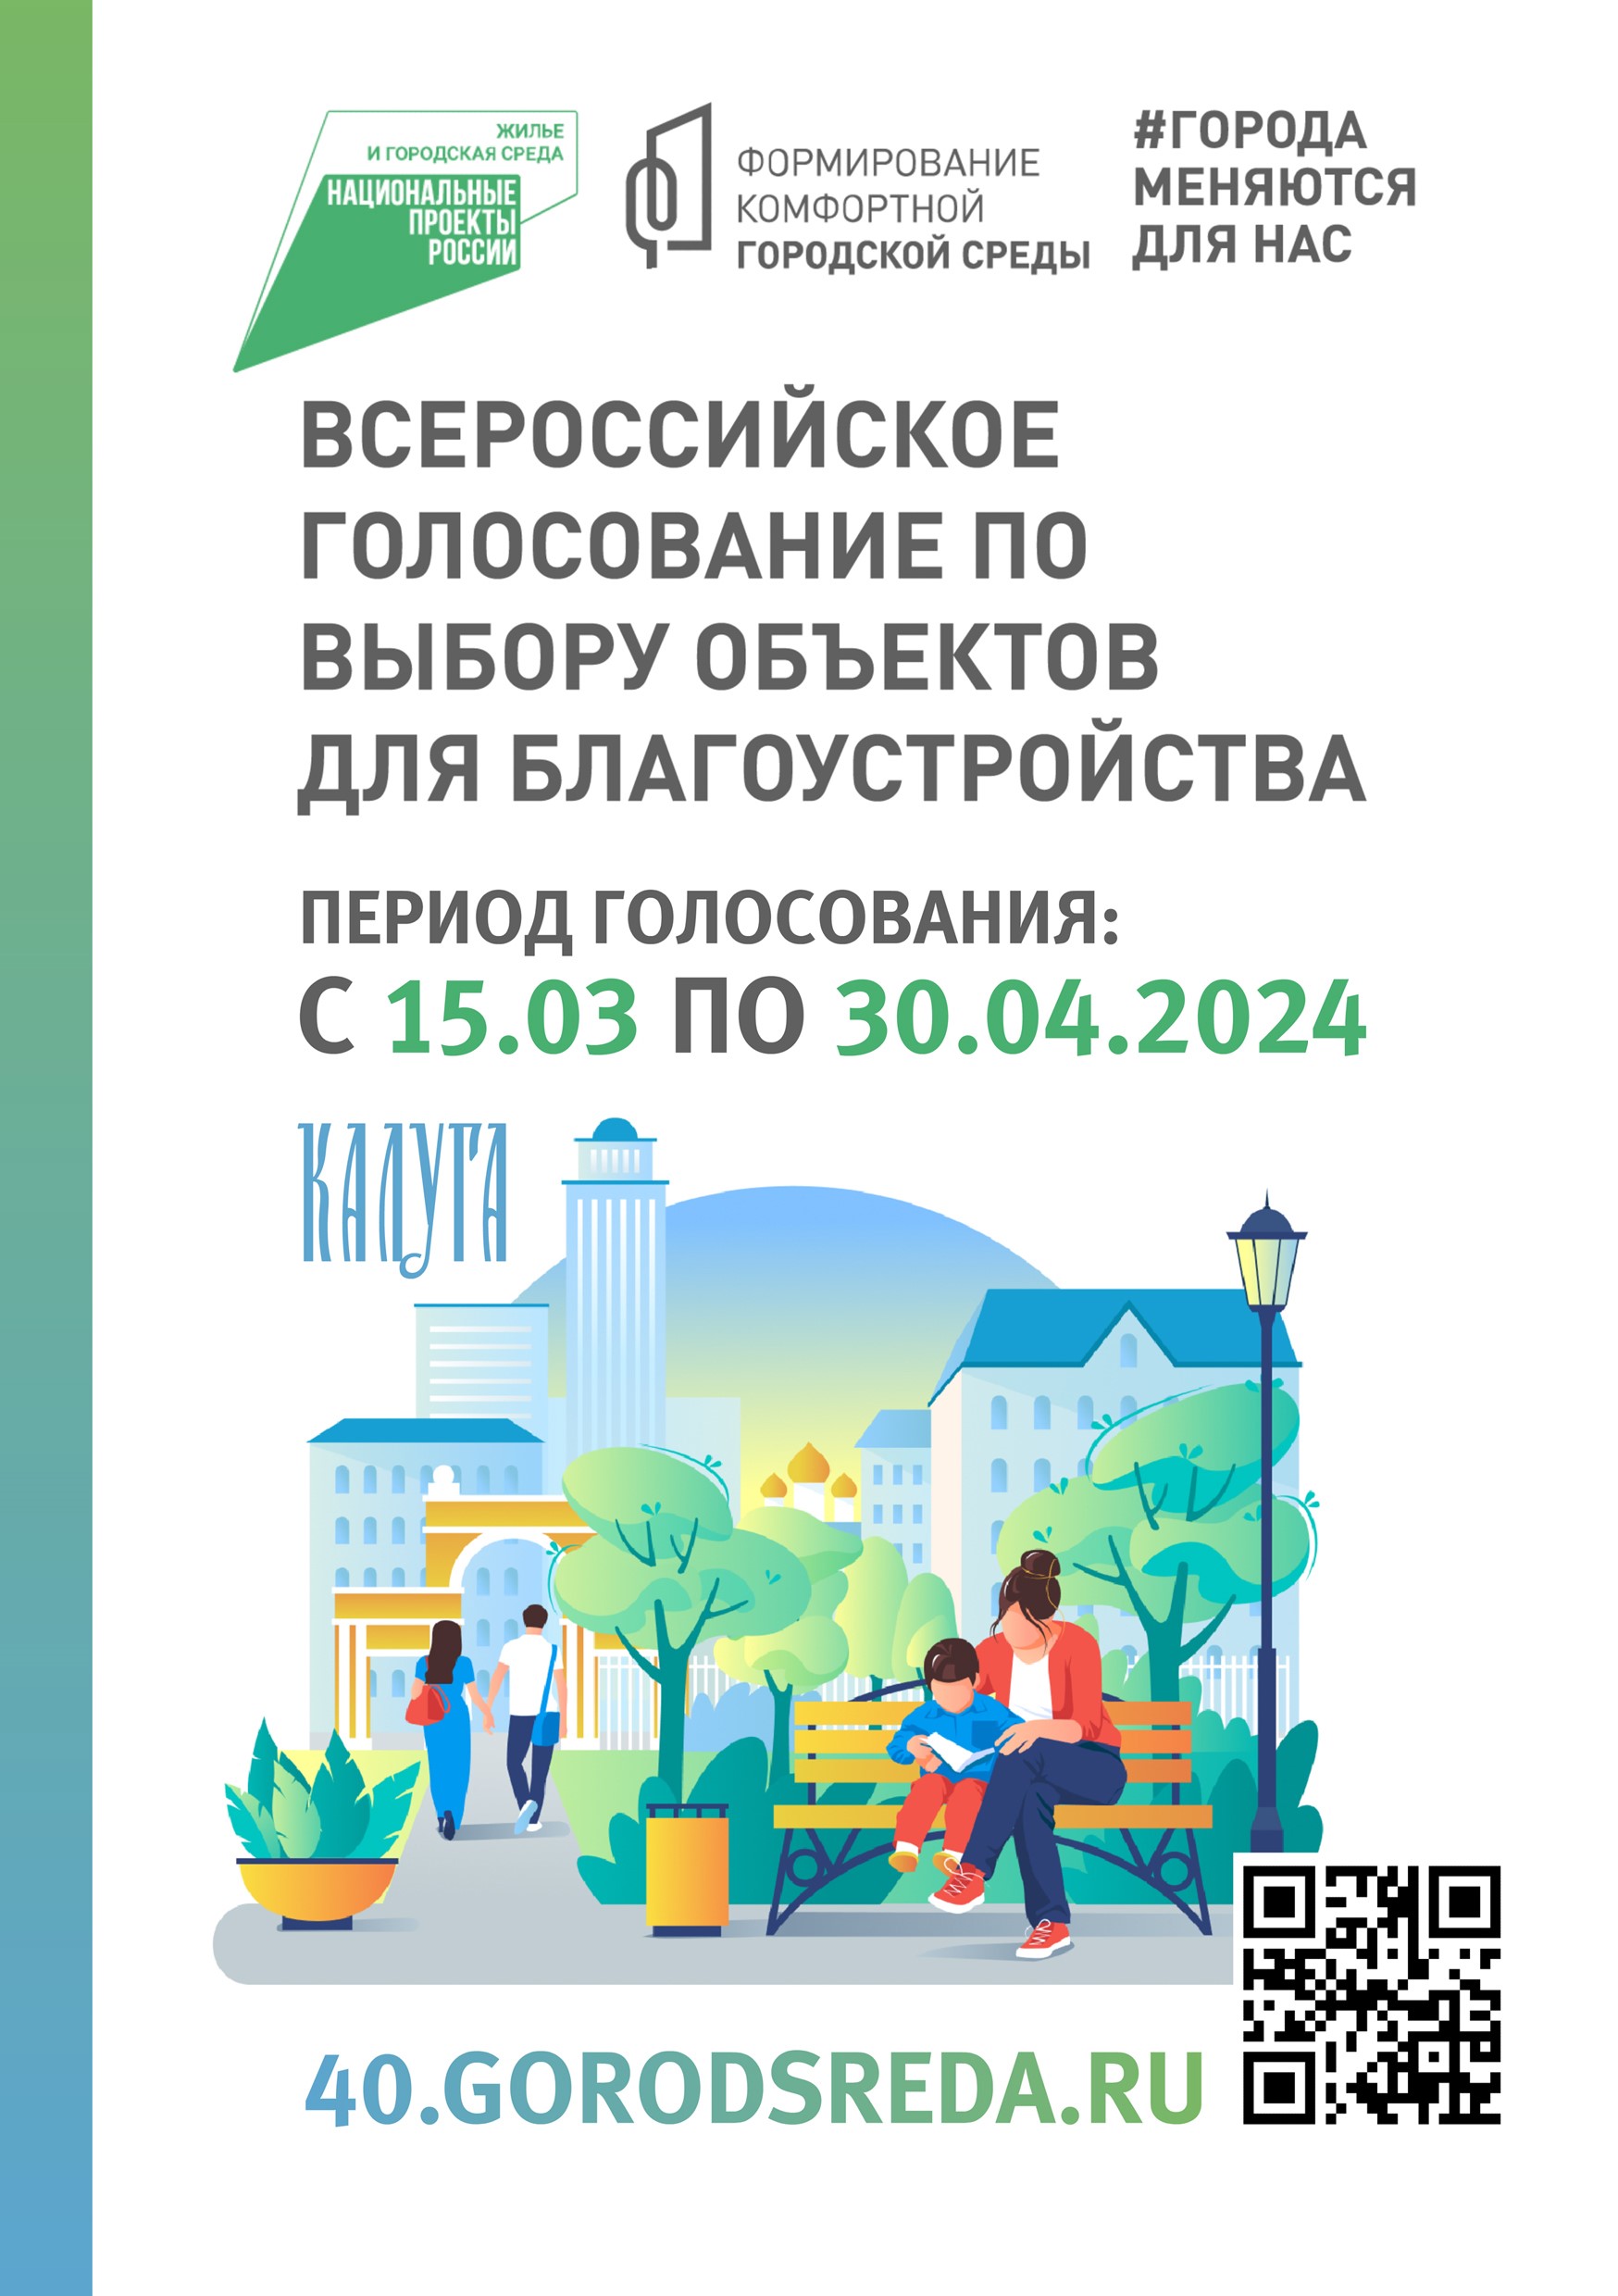 Всероссийское голосование в рамках федерального проекта  «Формирование комфортной городской среды».